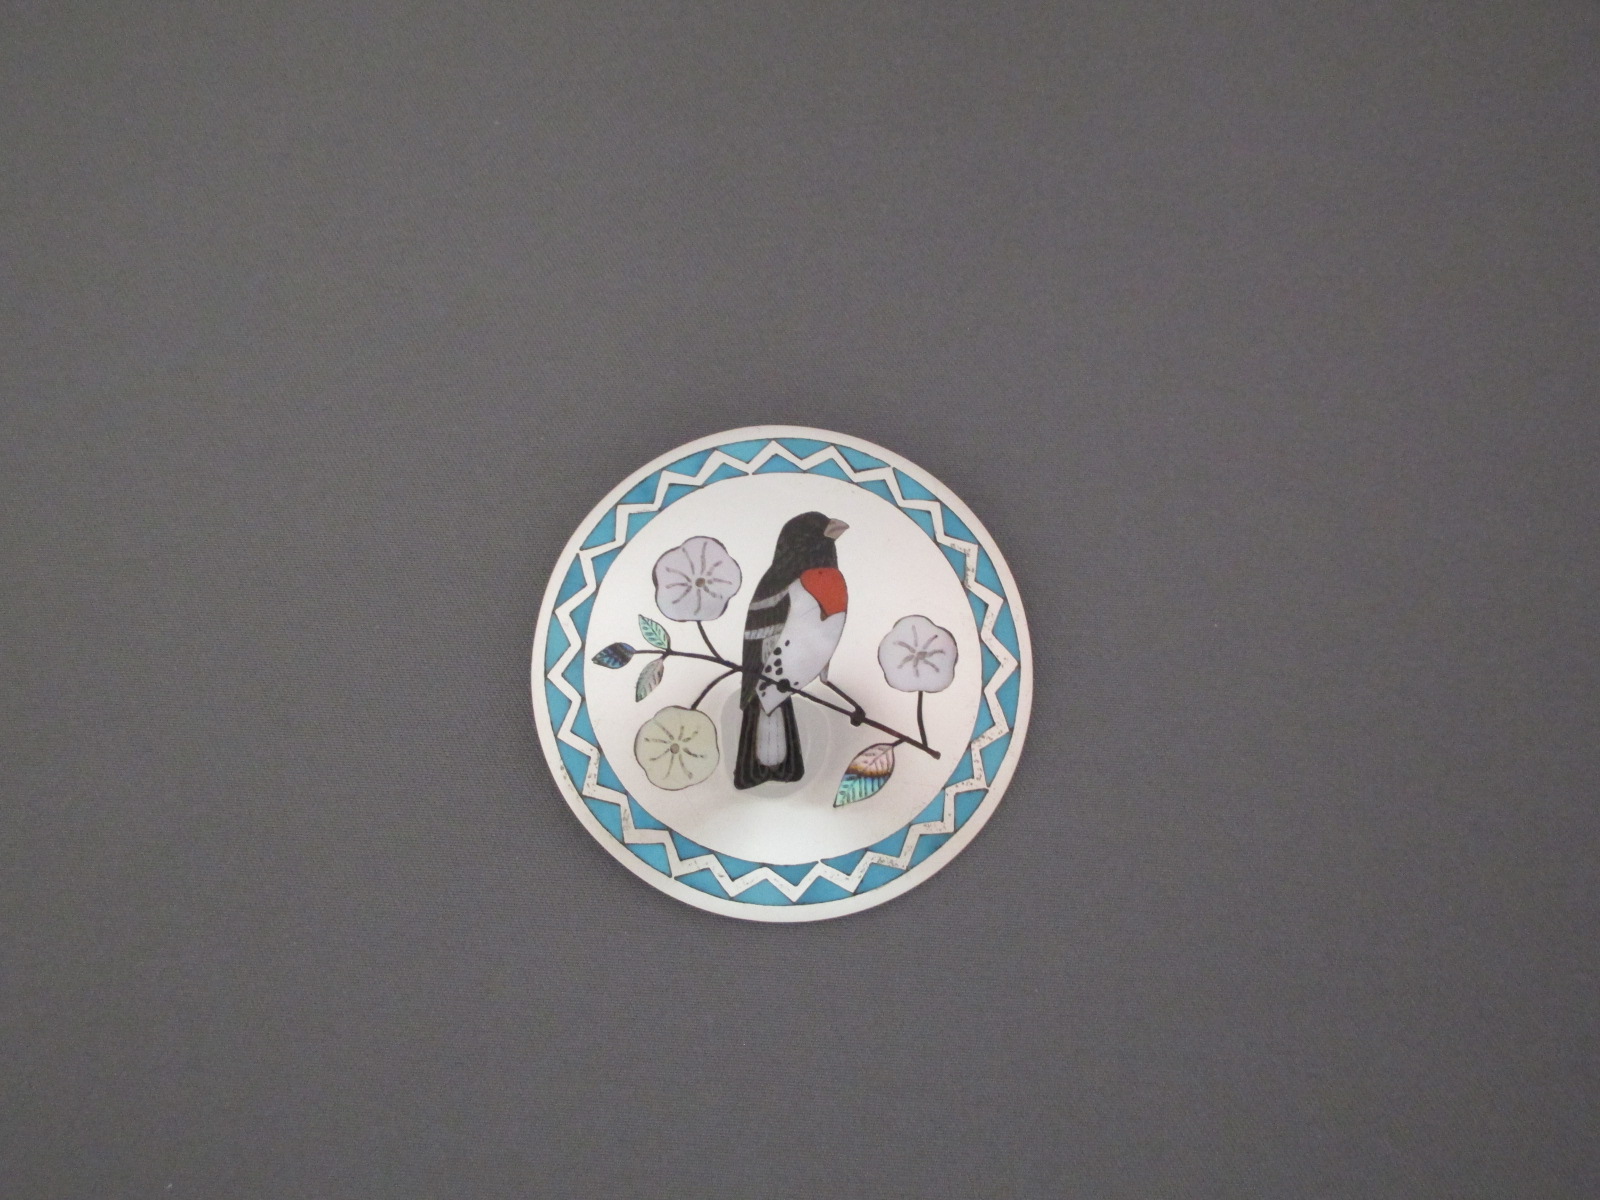 Zuni Inlay Pin-Pendant by Native American Zuni Indian jewelry artists, Ruddell & Nancy Laconsello $495-